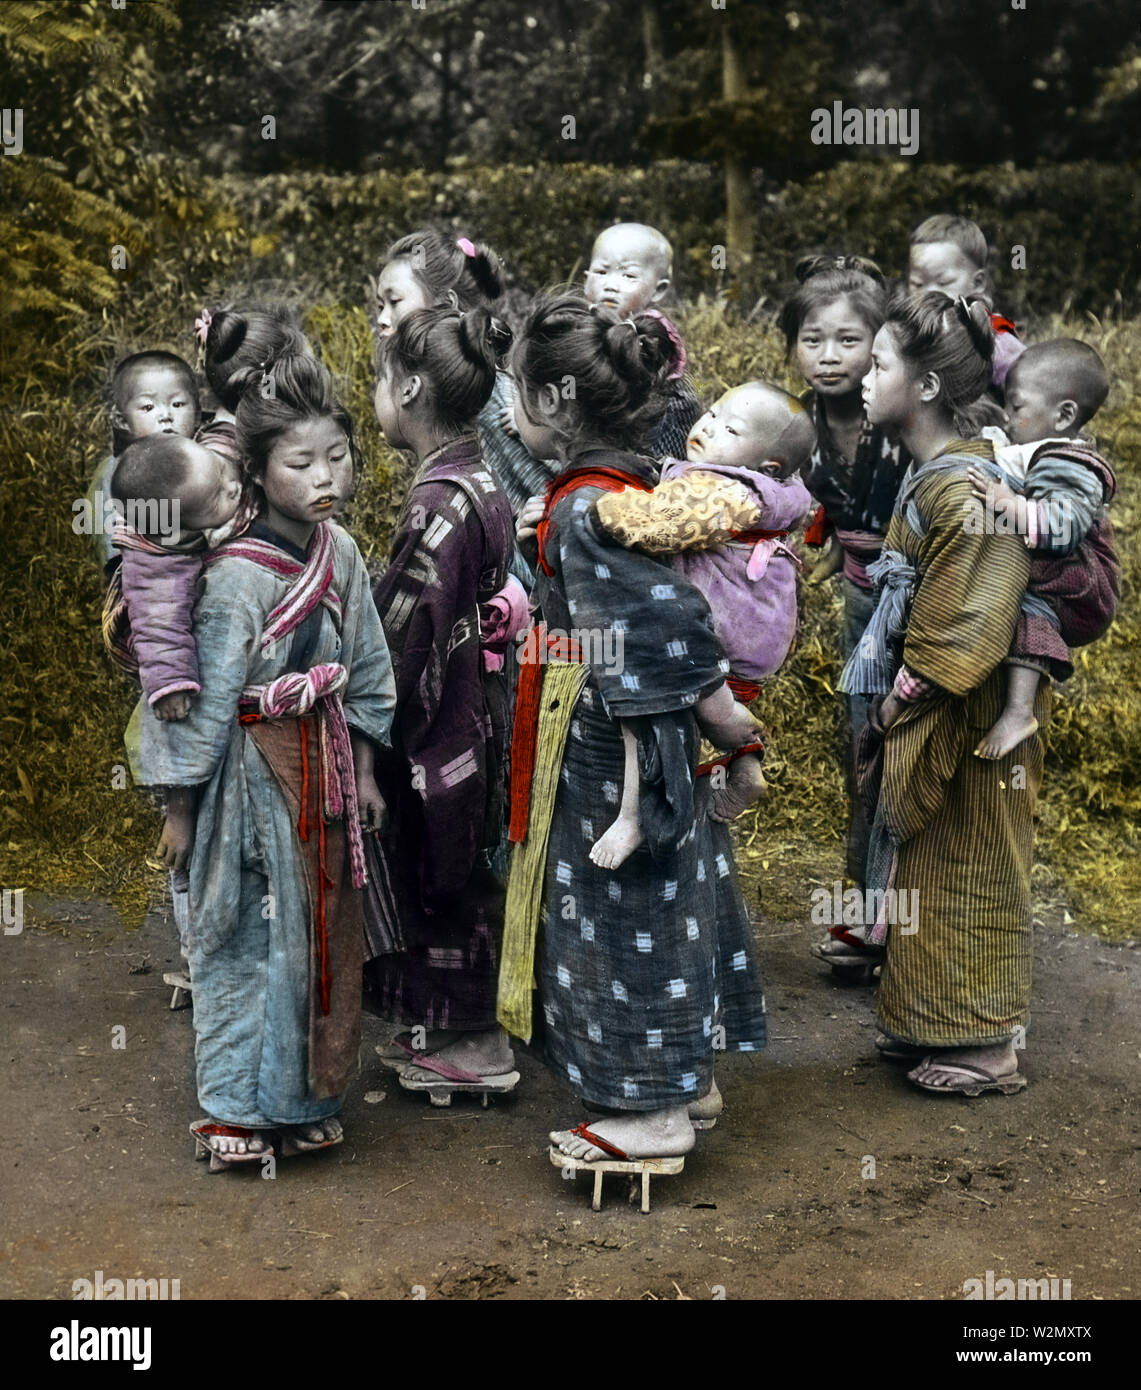 [1900s Japan - Junge japanische Mädchen tragen Babys] - Eine Gruppe von komori auf der Landstraße in den frühen 1900er Jahren. Komori waren junge Mädchen aus armen Familien, die durch das Jahr angestellt wurden Mittel- und Oberschicht die Mütter in der Pflege ihrer Kinder zu unterstützen. Zusätzlich zum Tragen das Baby herum, die komori würde auch ein wenig mit der Hausarbeit unterstützen. Komori erhielt Nahrung, Unterkunft, Kleidung, und gelegentlich etwas Geld. 1900-1903 datiert von Enami Spezialist Rob Oechsle. 20. Jahrhundert vintage Glas schieben. Stockfoto